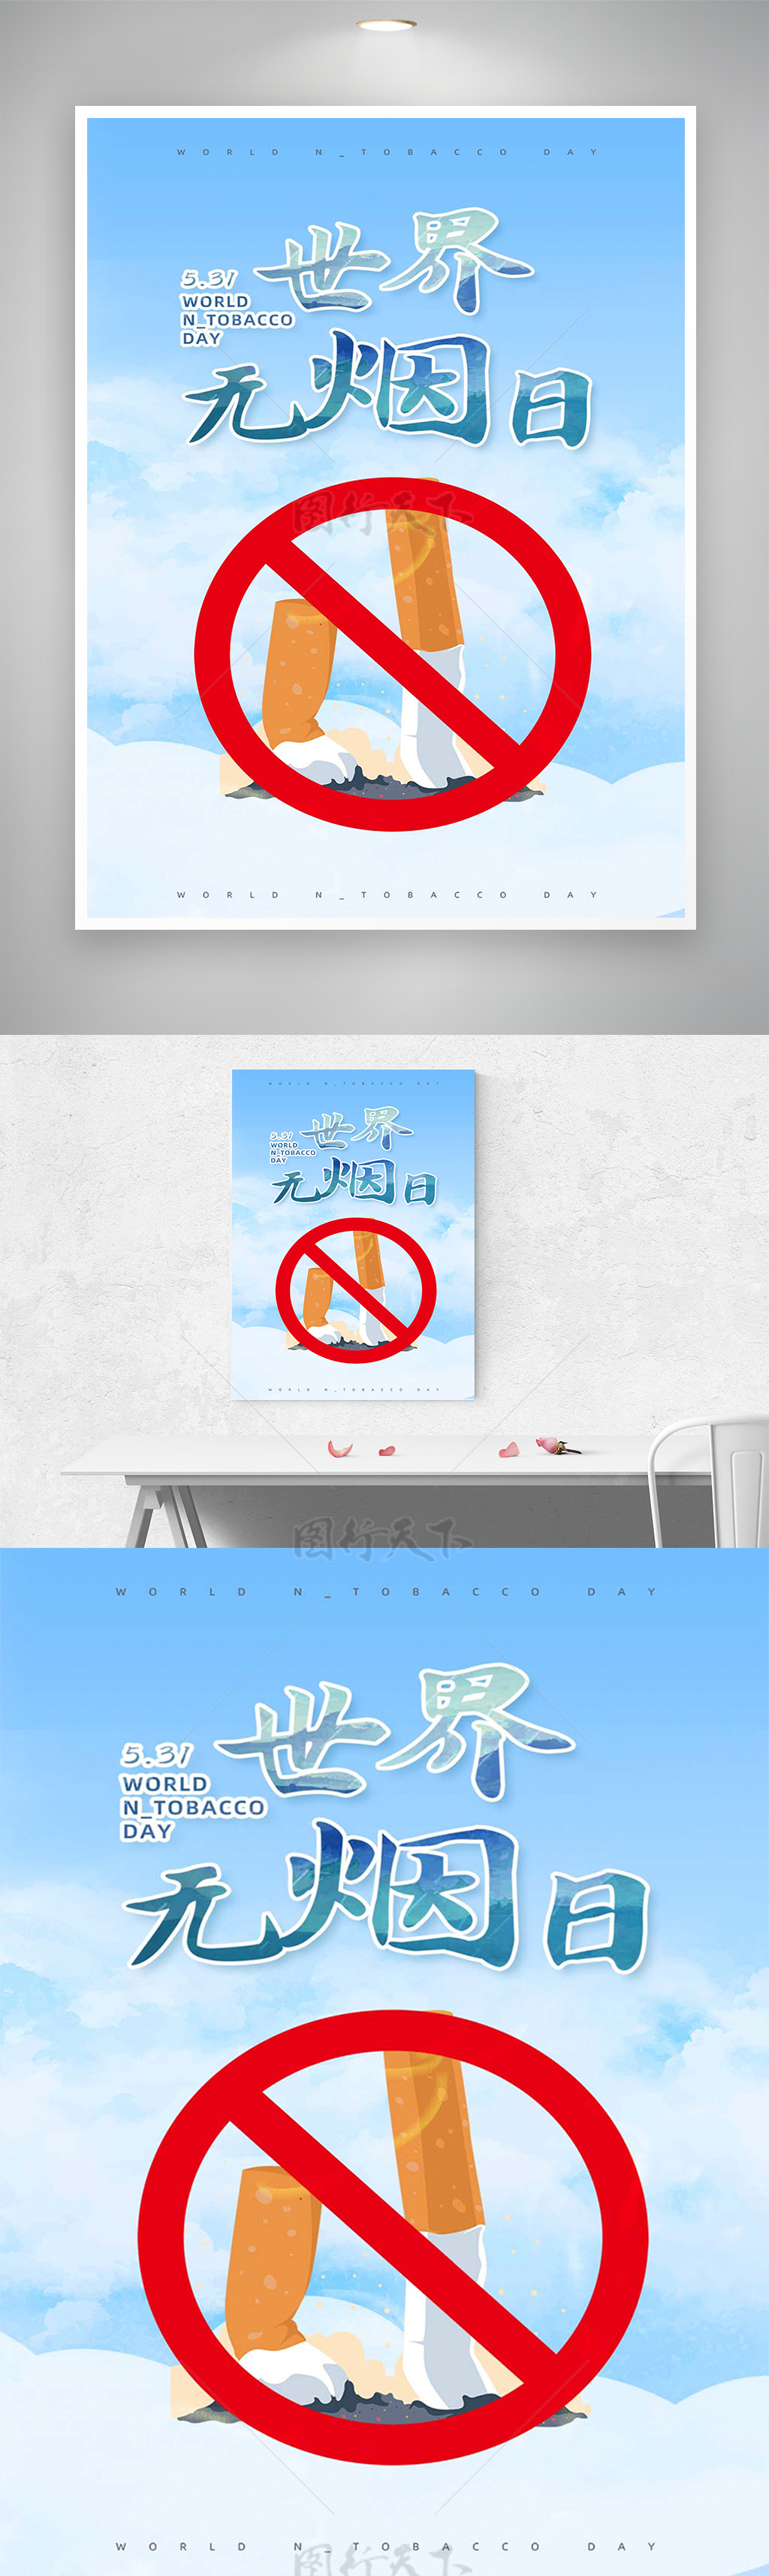 531世界无烟日节日宣传简约海报